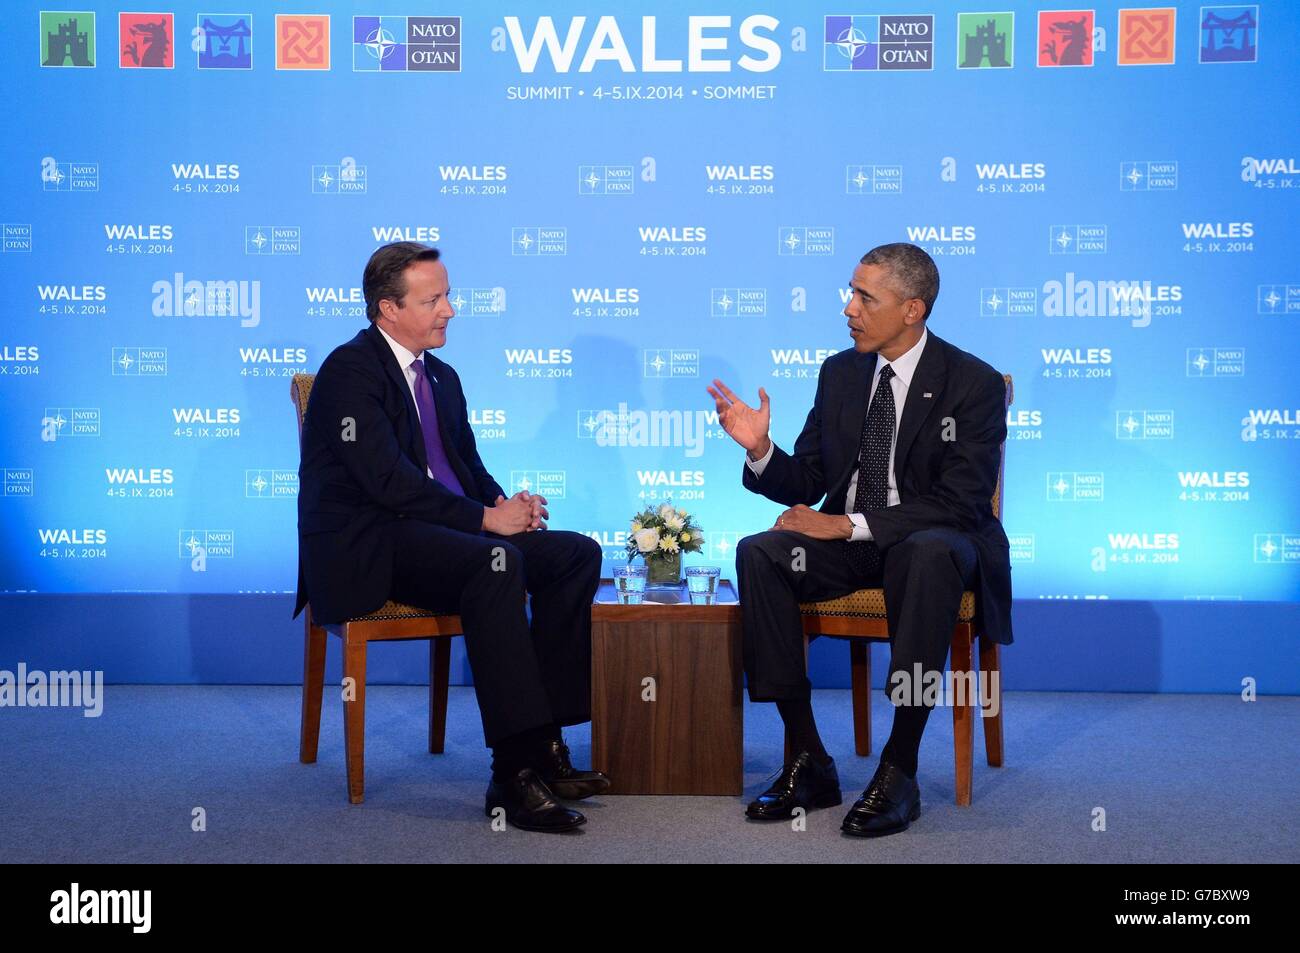 El primer ministro David Cameron celebra una reunión bilateral con el presidente de los Estados Unidos Obama el primer día de la cumbre de la OTAN de este año en Celtic Manor en Newport, al sur de Gales. Foto de stock